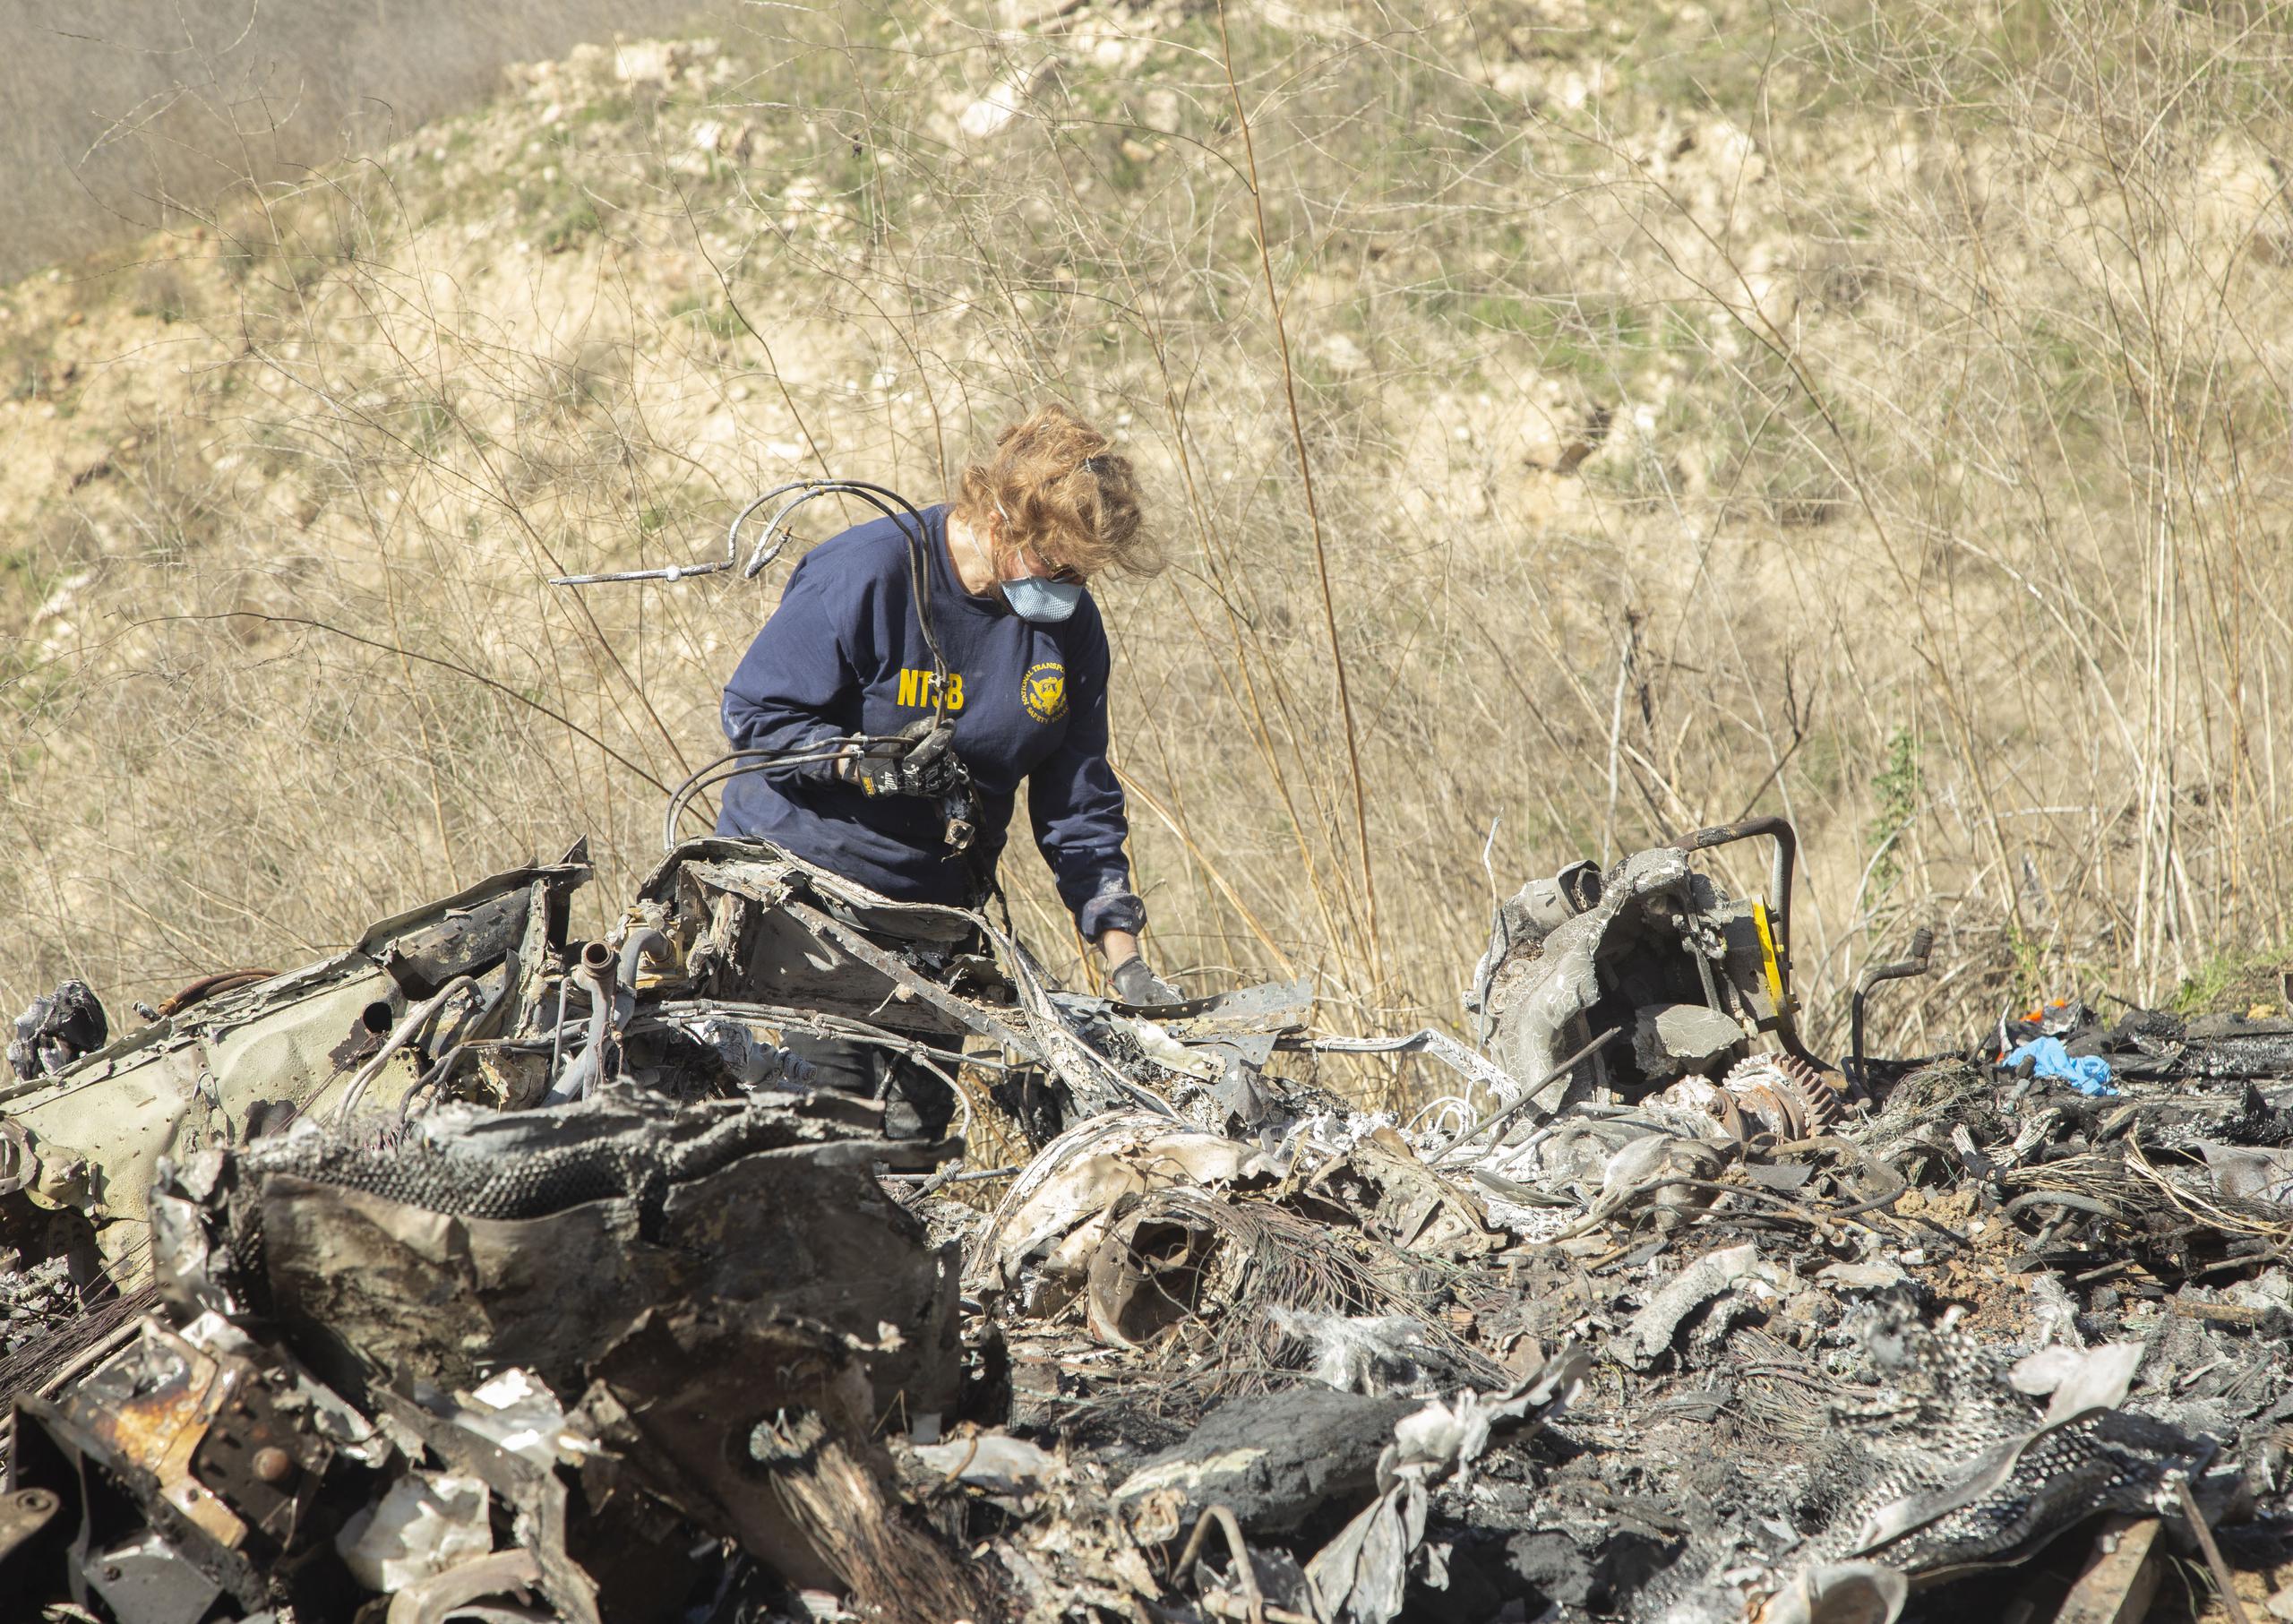 Una investigadora del accidente en el que murió Kobe Bryant, su hija y otras siete personas, examina los restos del helicóptero accidentado.